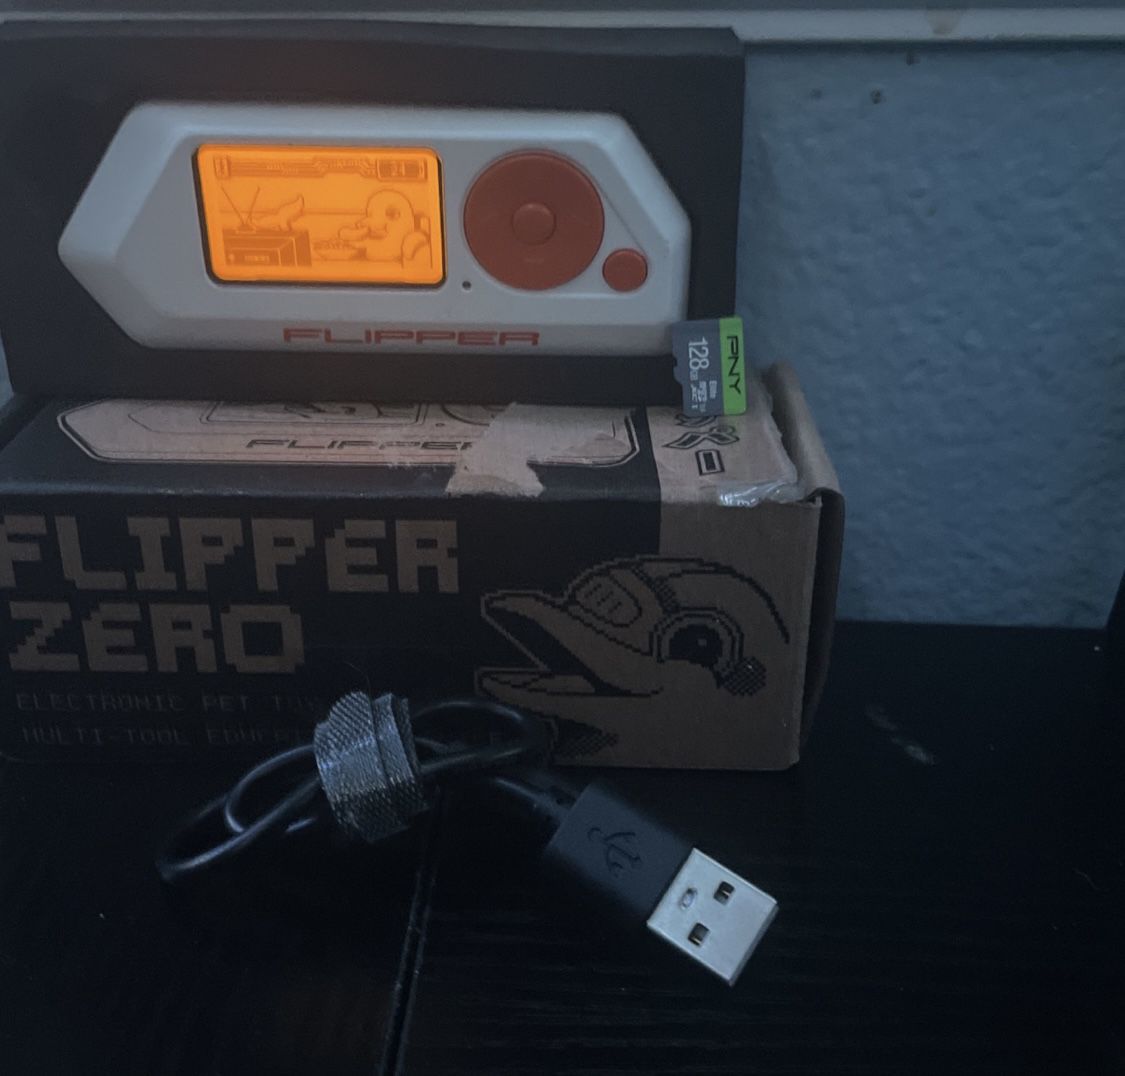 FLIPPER ZERO (multi hacker Tool)